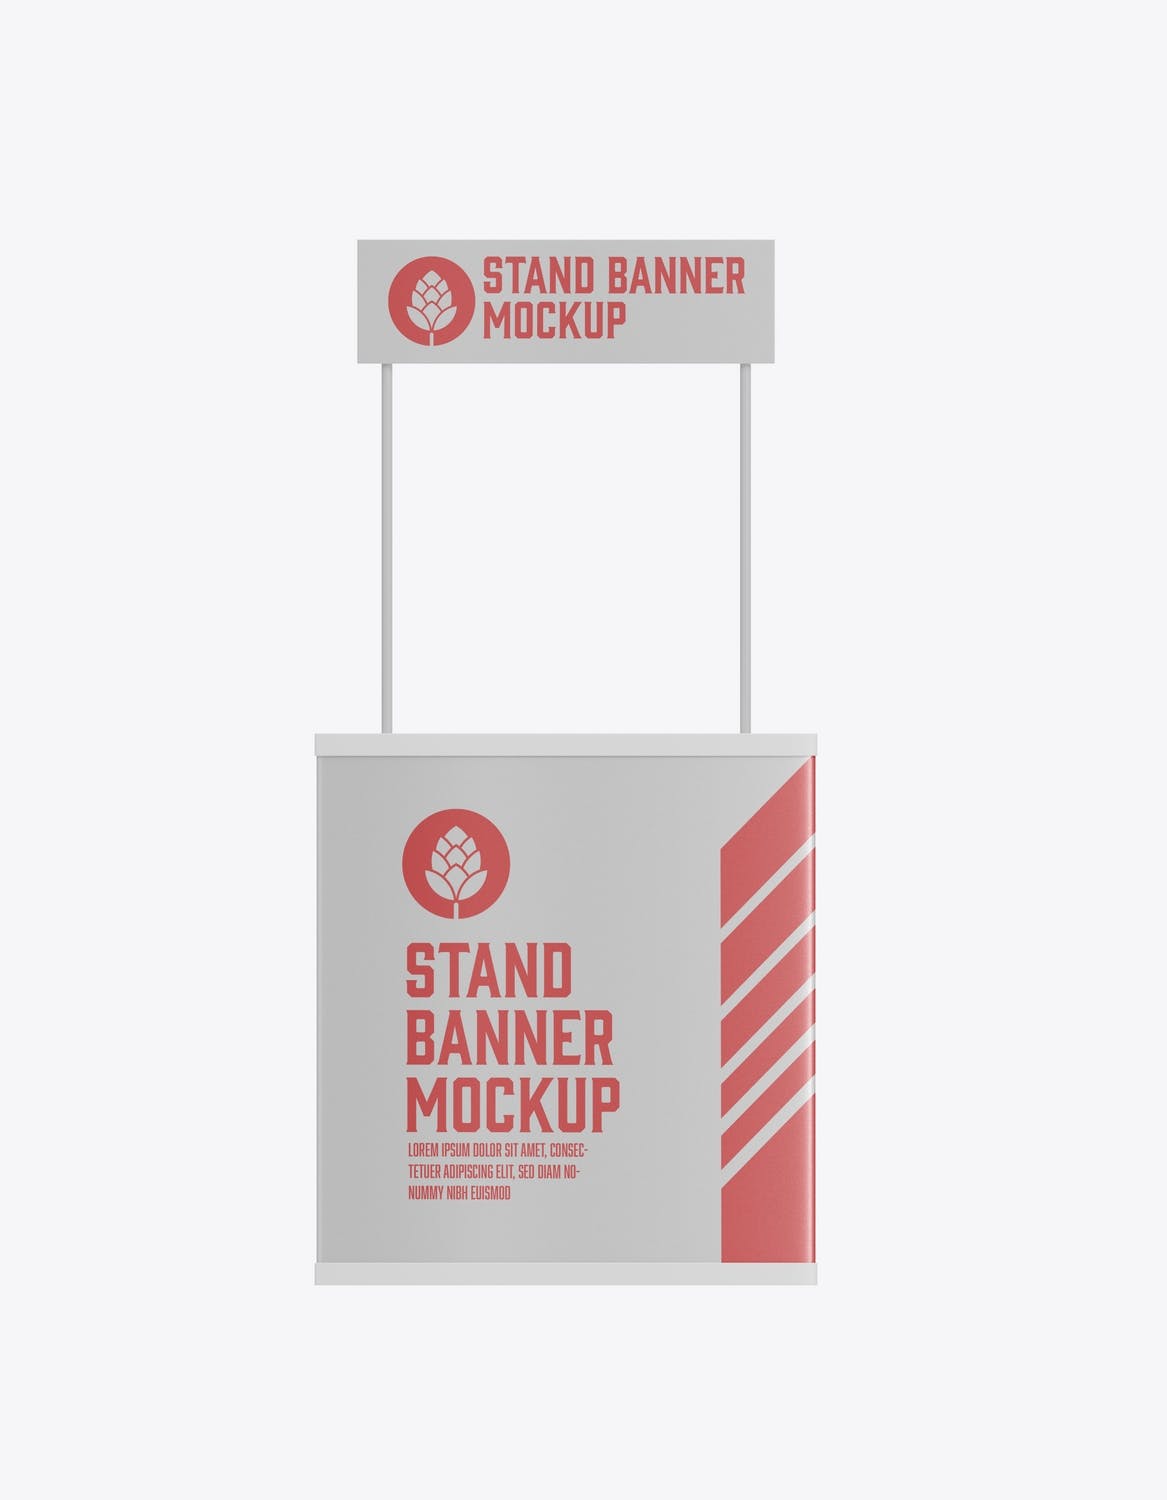 小吃摊位广告Banner样机模板 Promo Stand Banner Mockup 样机素材 第2张